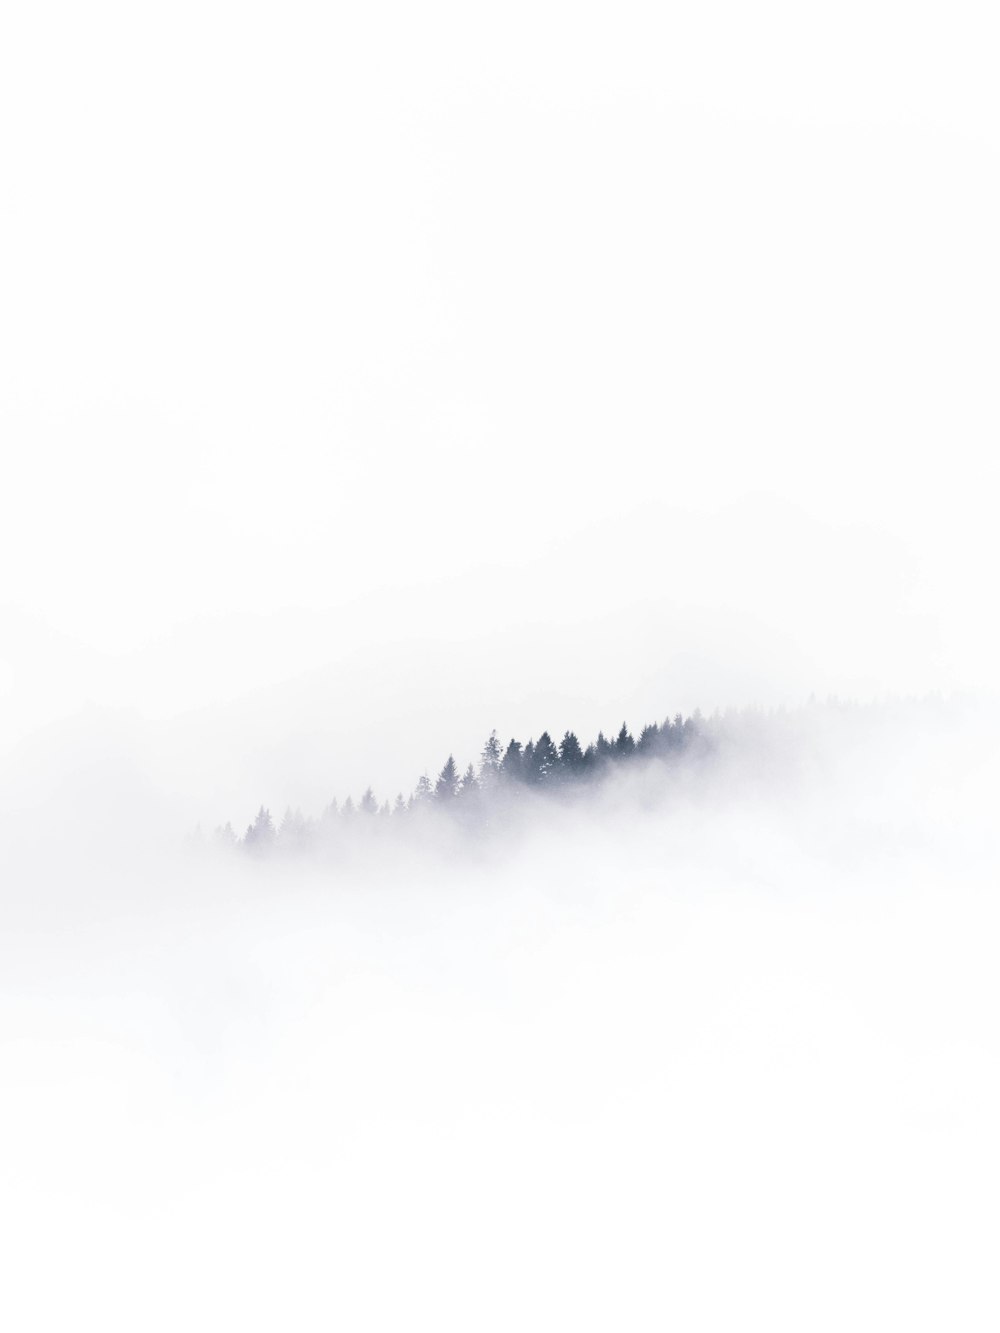 遠くに木々がいる霧の風景